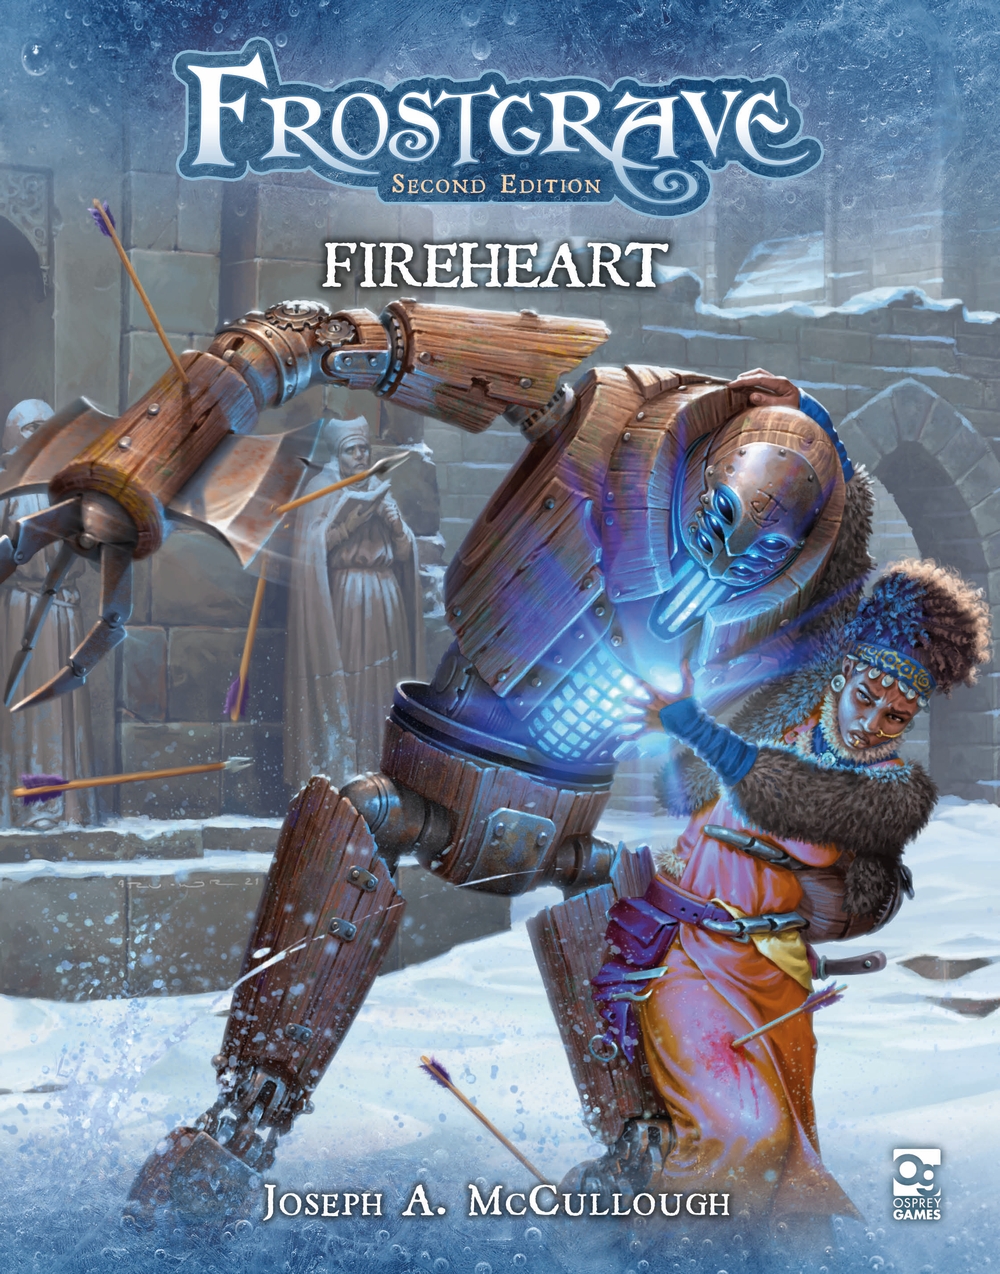 Frostgrave: Fireheart cover art